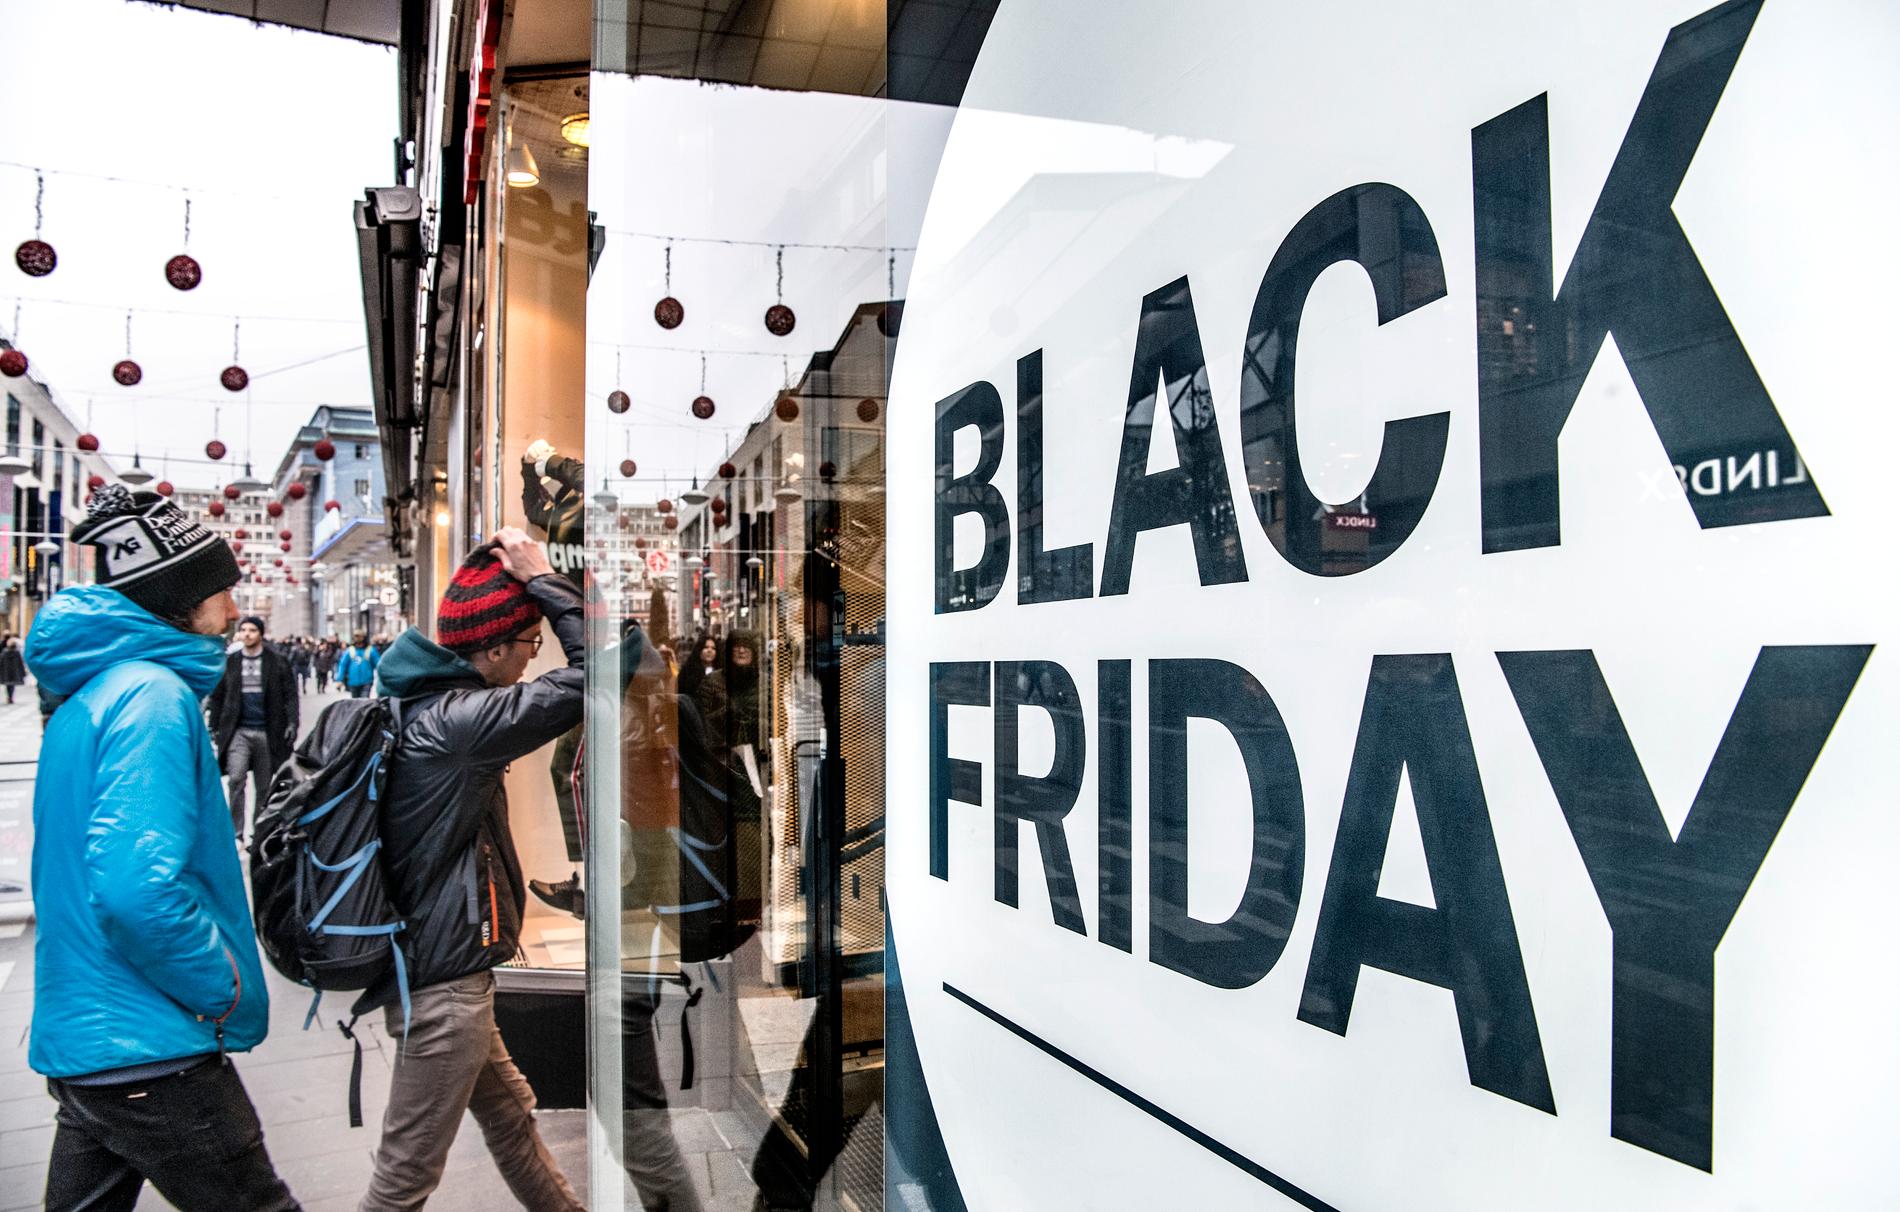 Teknik är det svensken vill köpa under Black Friday 2019, enligt nya siffror. 